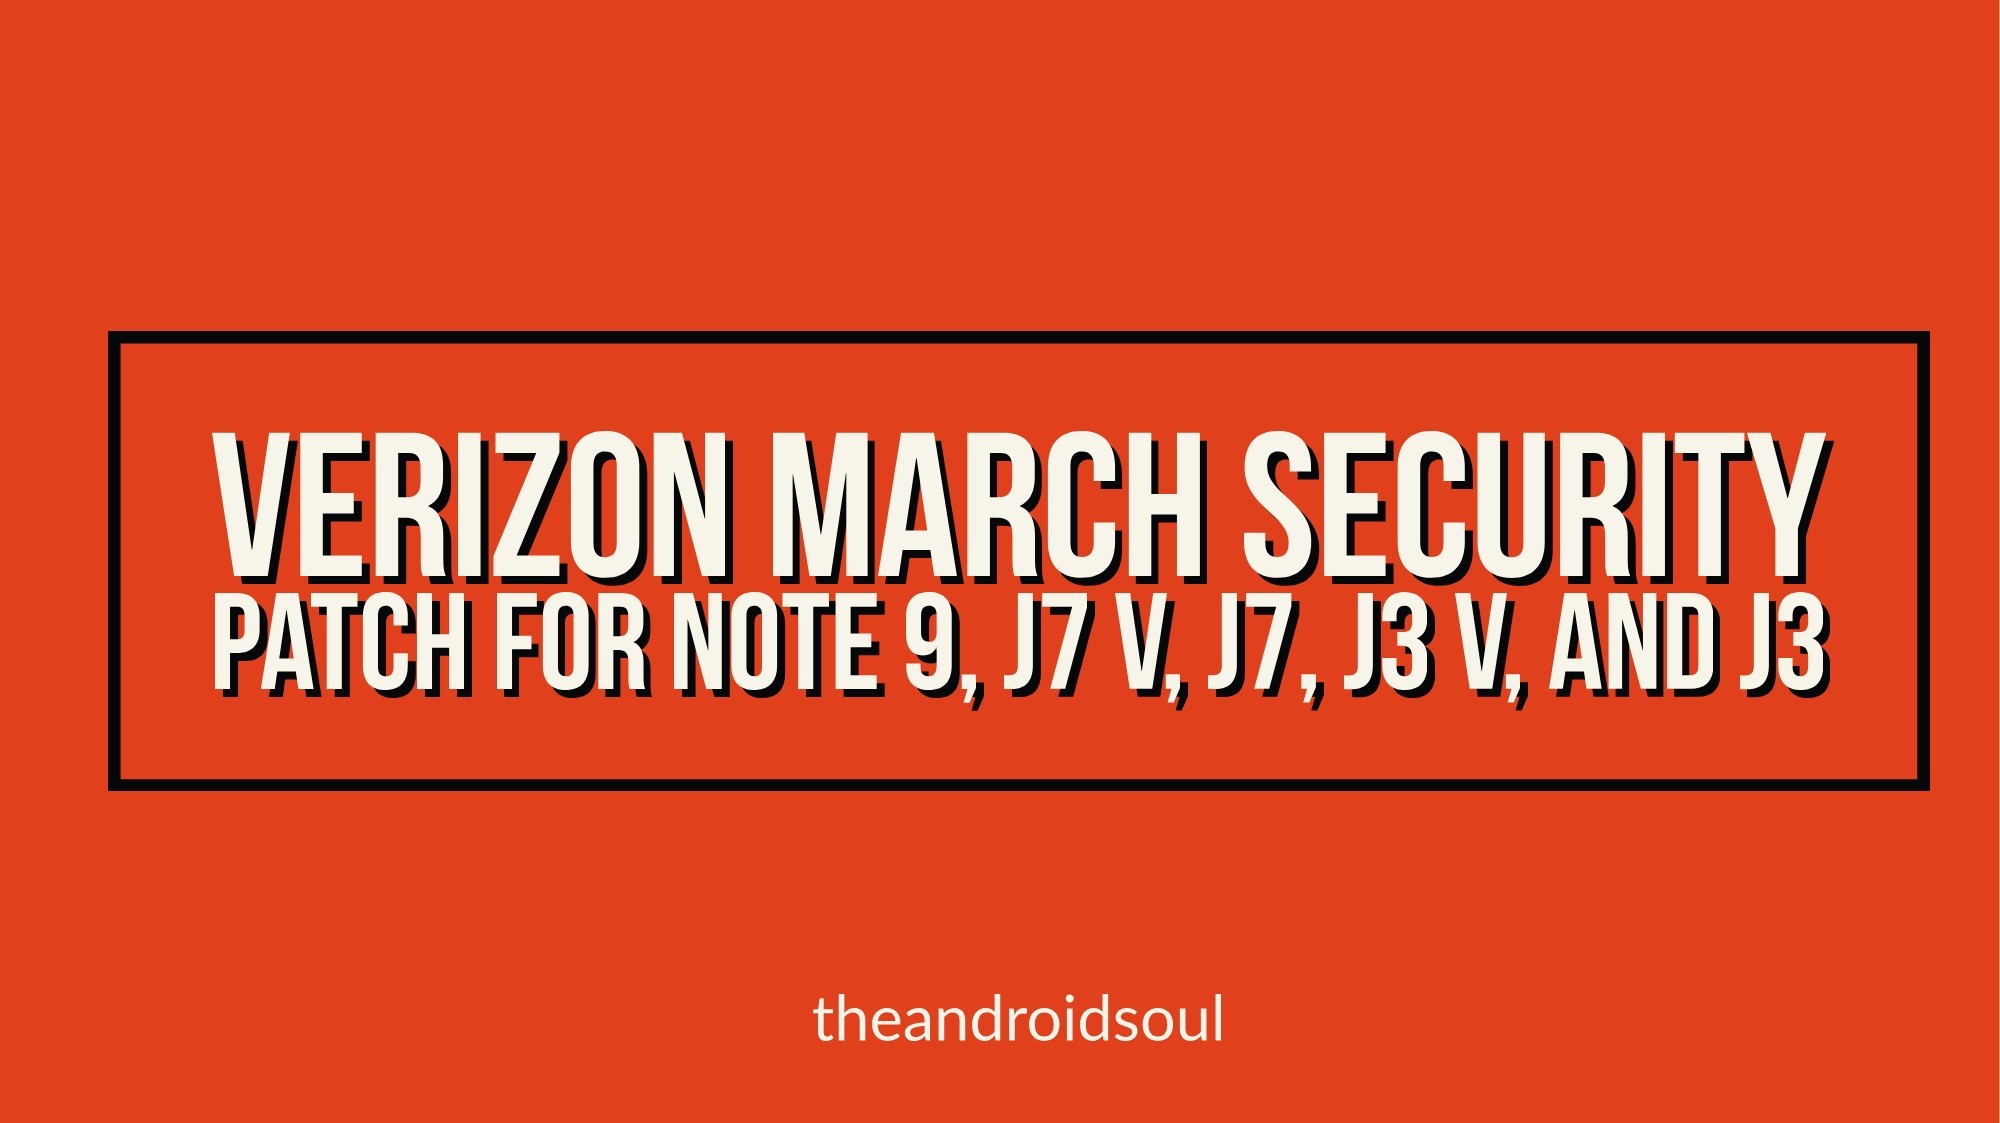 Verizon lanza la actualización del parche de seguridad de marzo para Samsung Galaxy Note 9, J7 V, J7, J3 V y J3